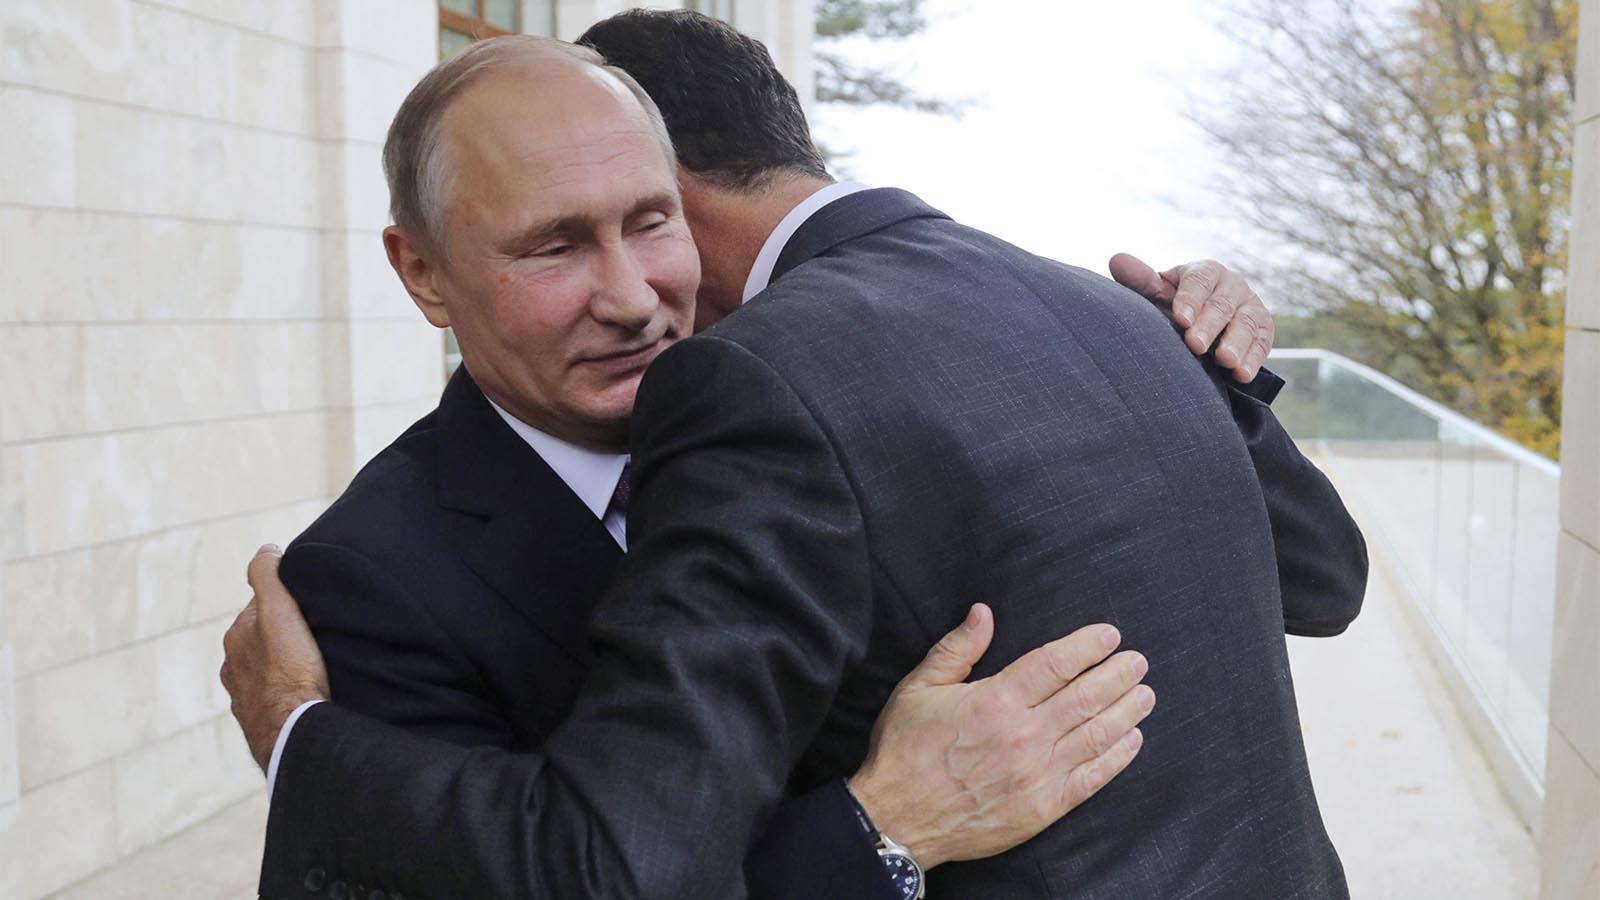 נשיא רוסיה ולדימר פוטין מחבק את נשיא סוריה אסד בפגישה בניהם אתמול 20 בנובמבר (צילום: Mikhail Klimentyev, Kremlin Pool Photo via AP)